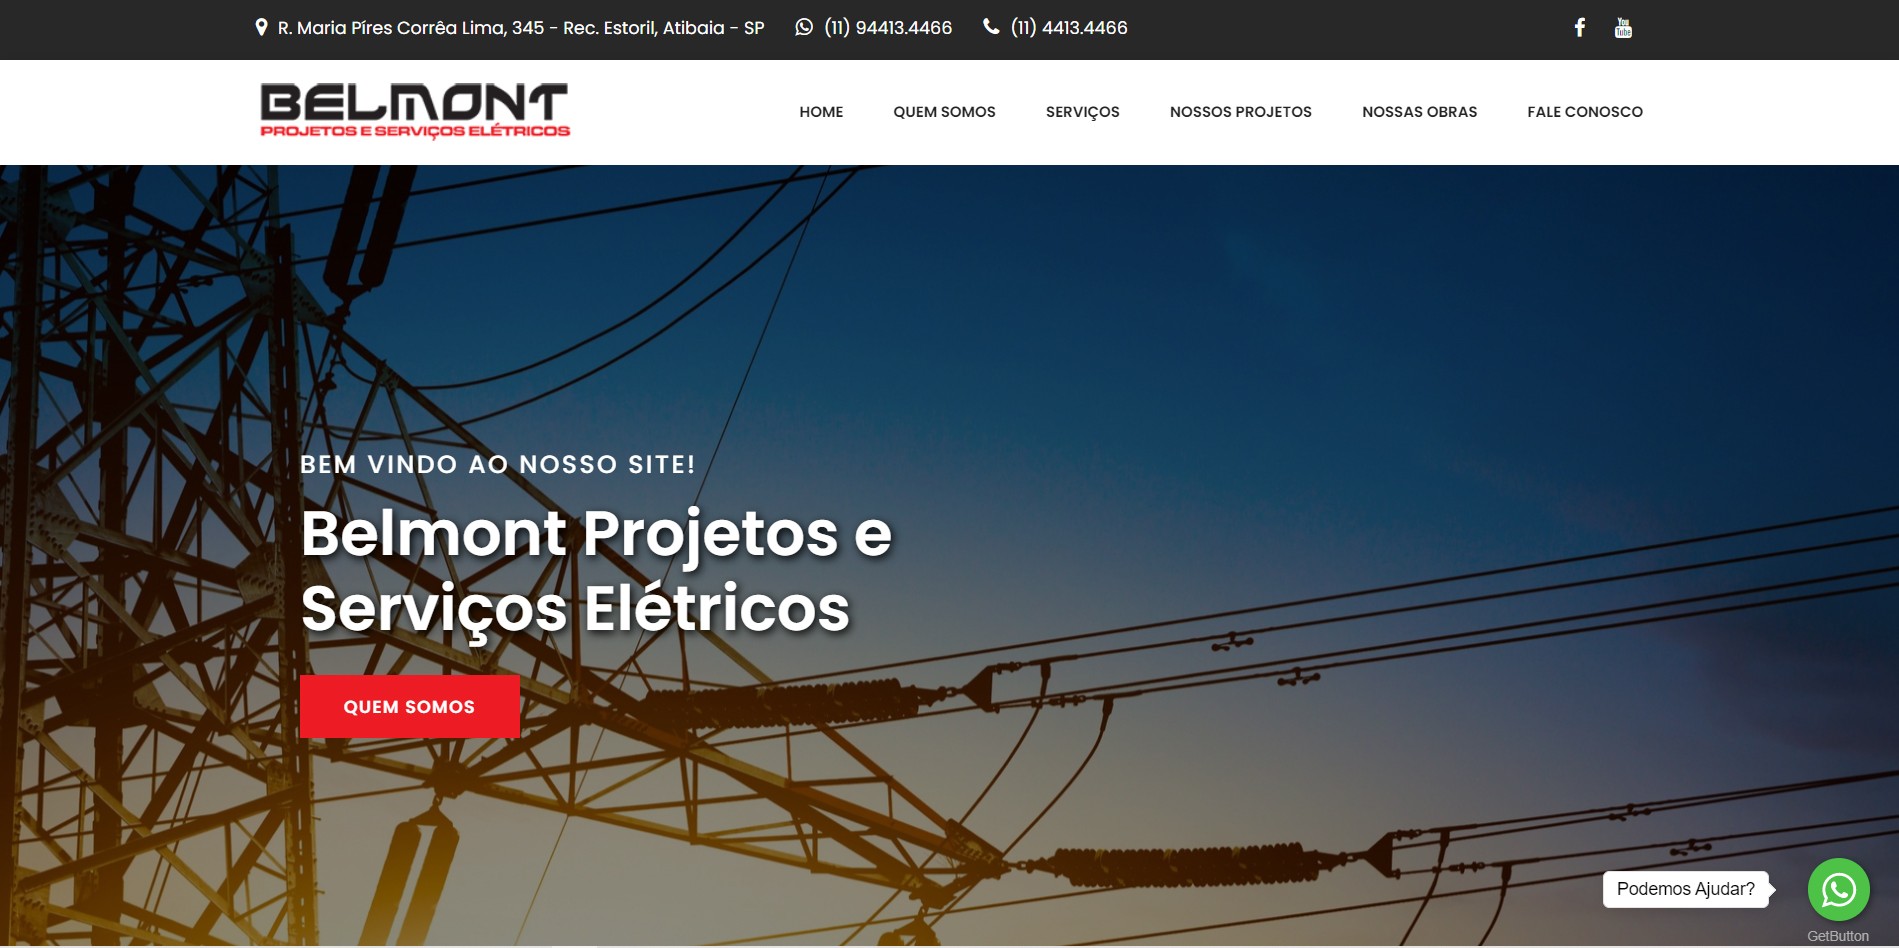  Novo Projeto Web Chegando! Belmont Projetos e Serviços Elétricos